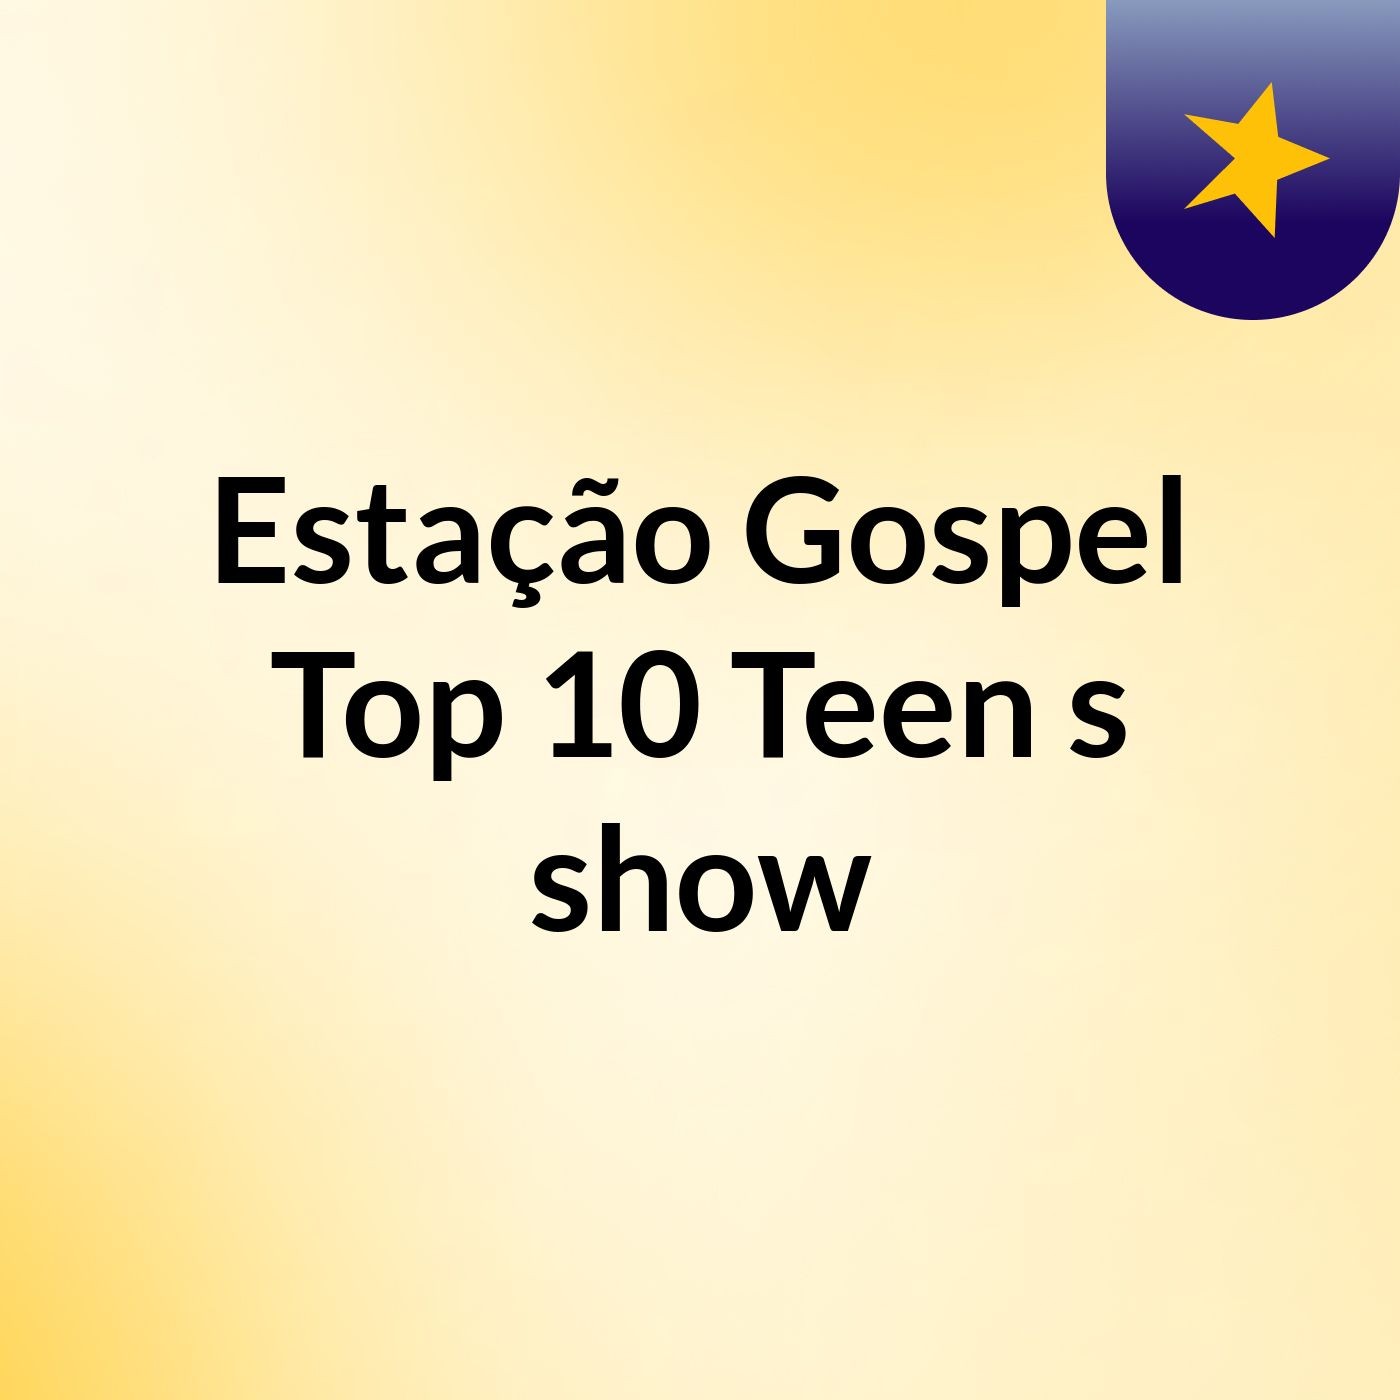 Estação Gospel Top 10 Teen's show